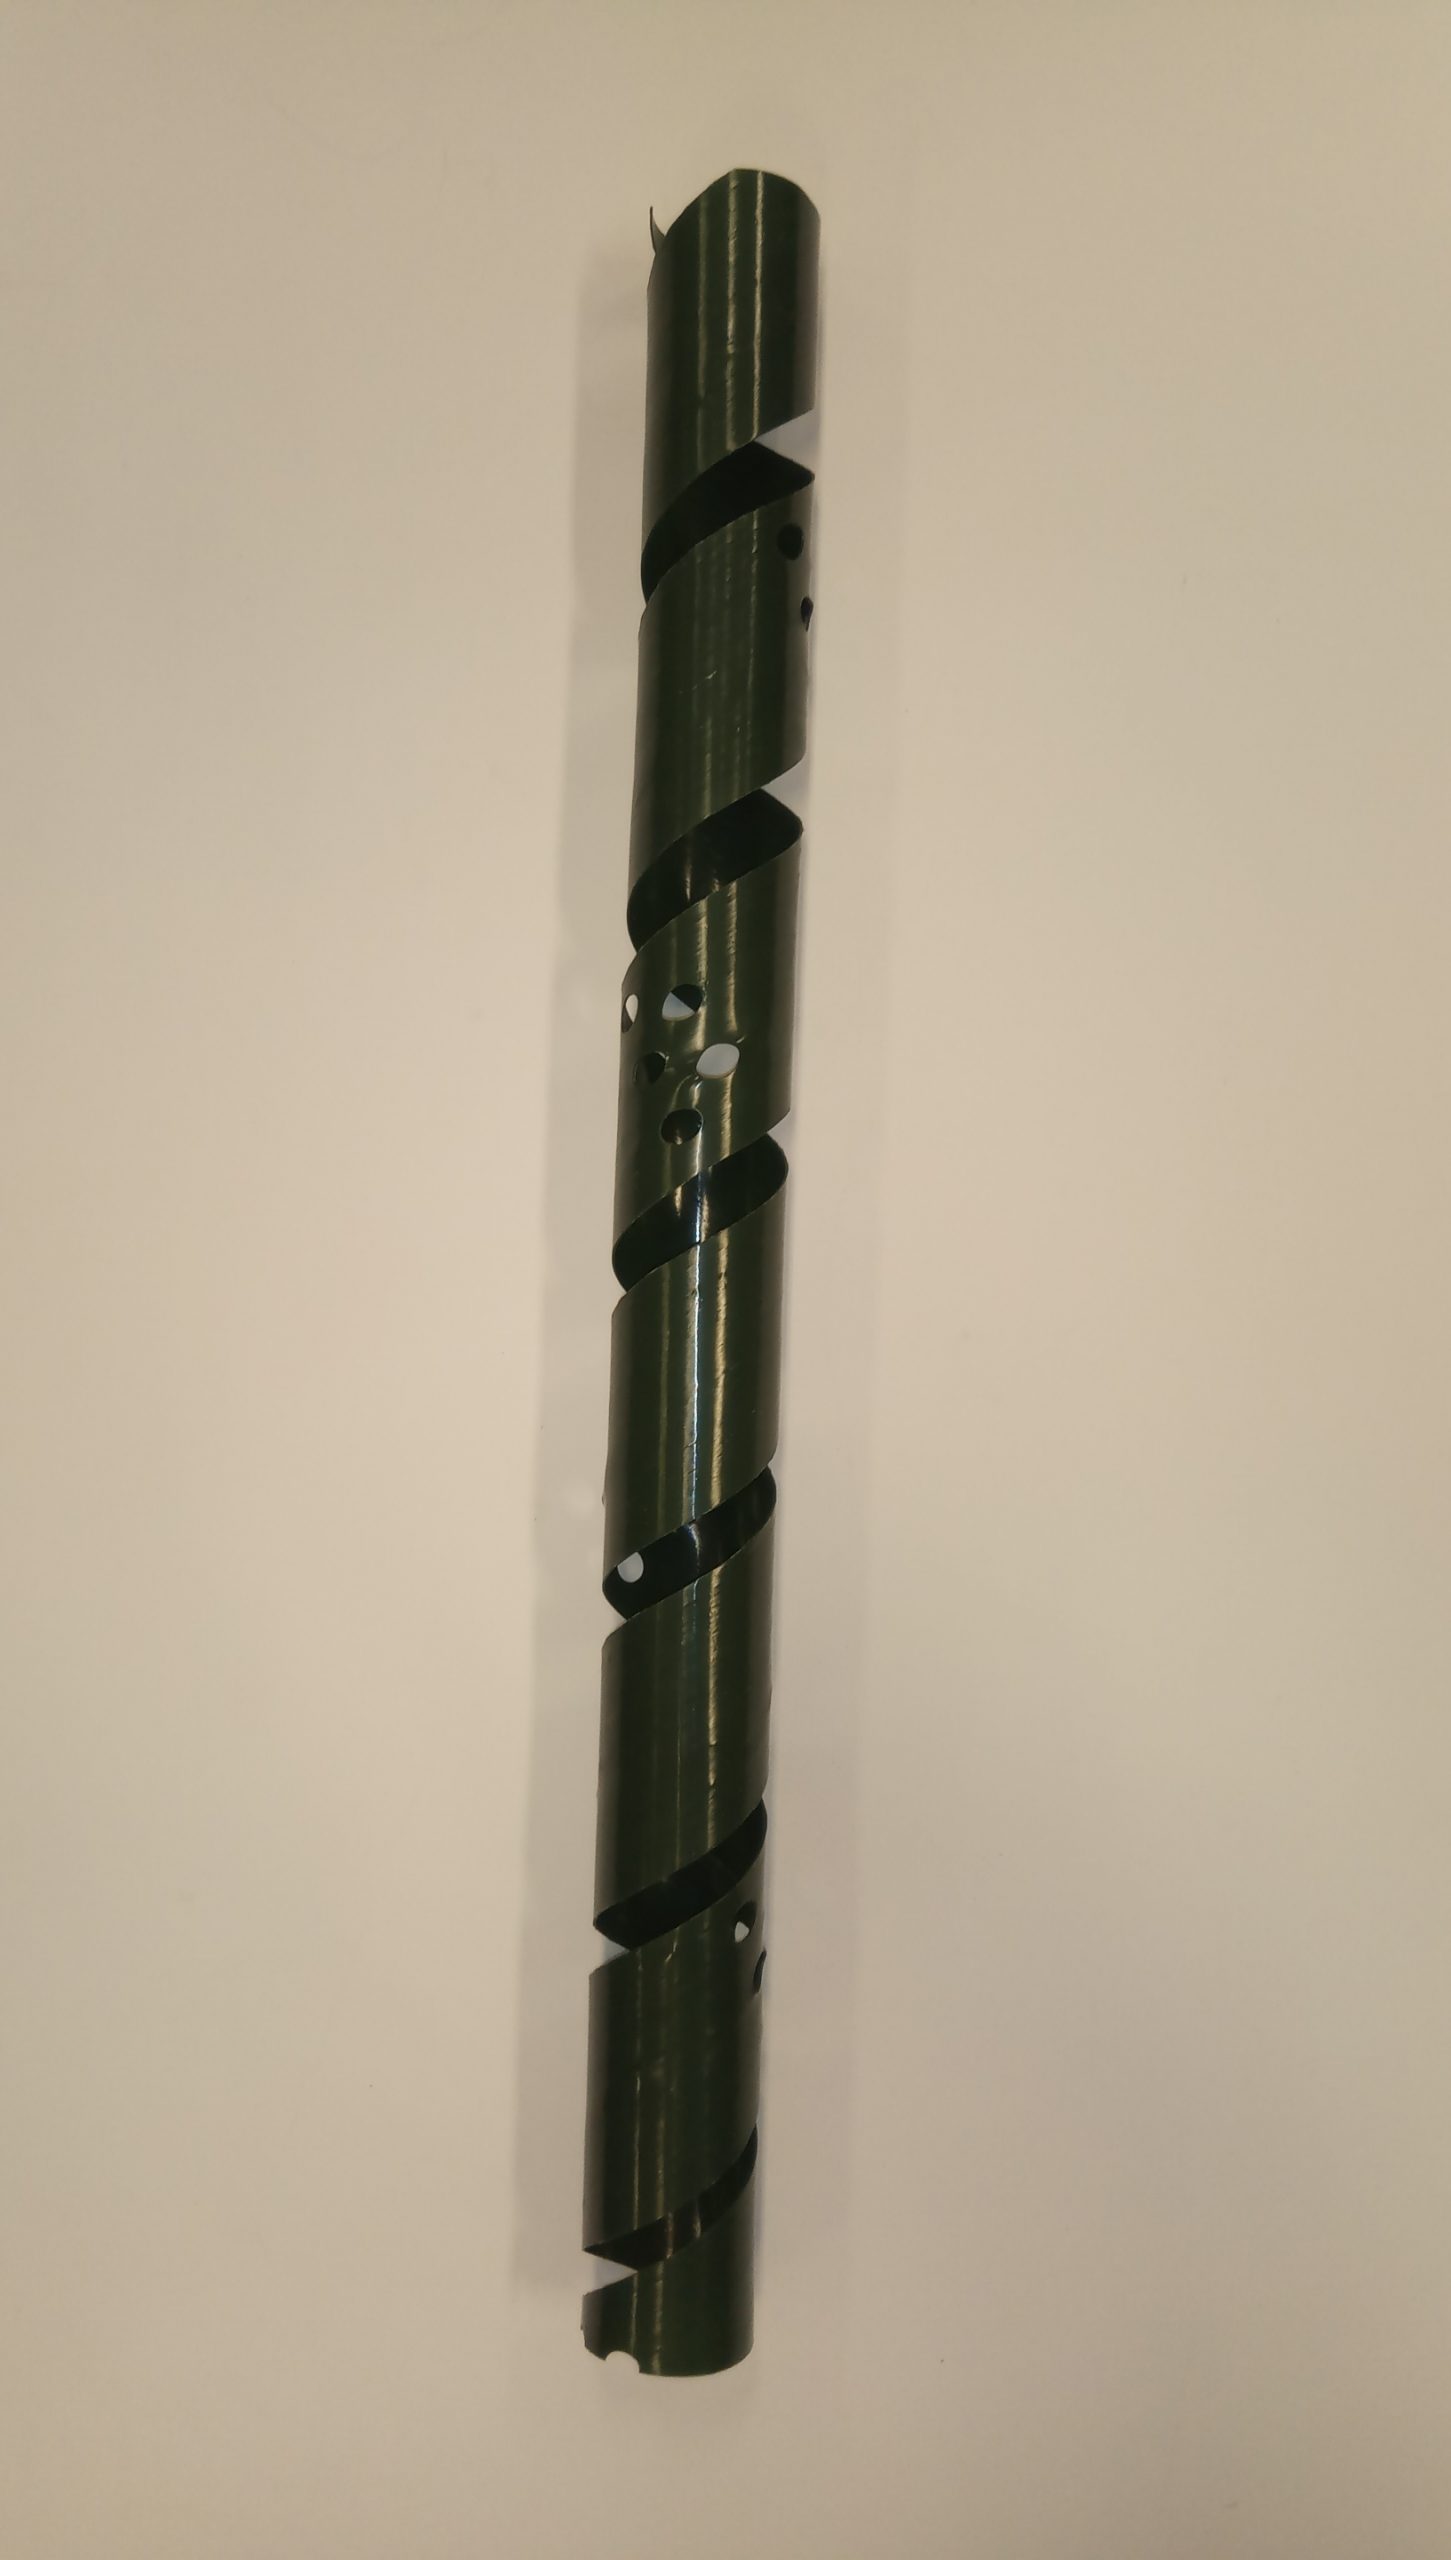 Boommanchet lengte 60 cm, Ø 3,8 cm